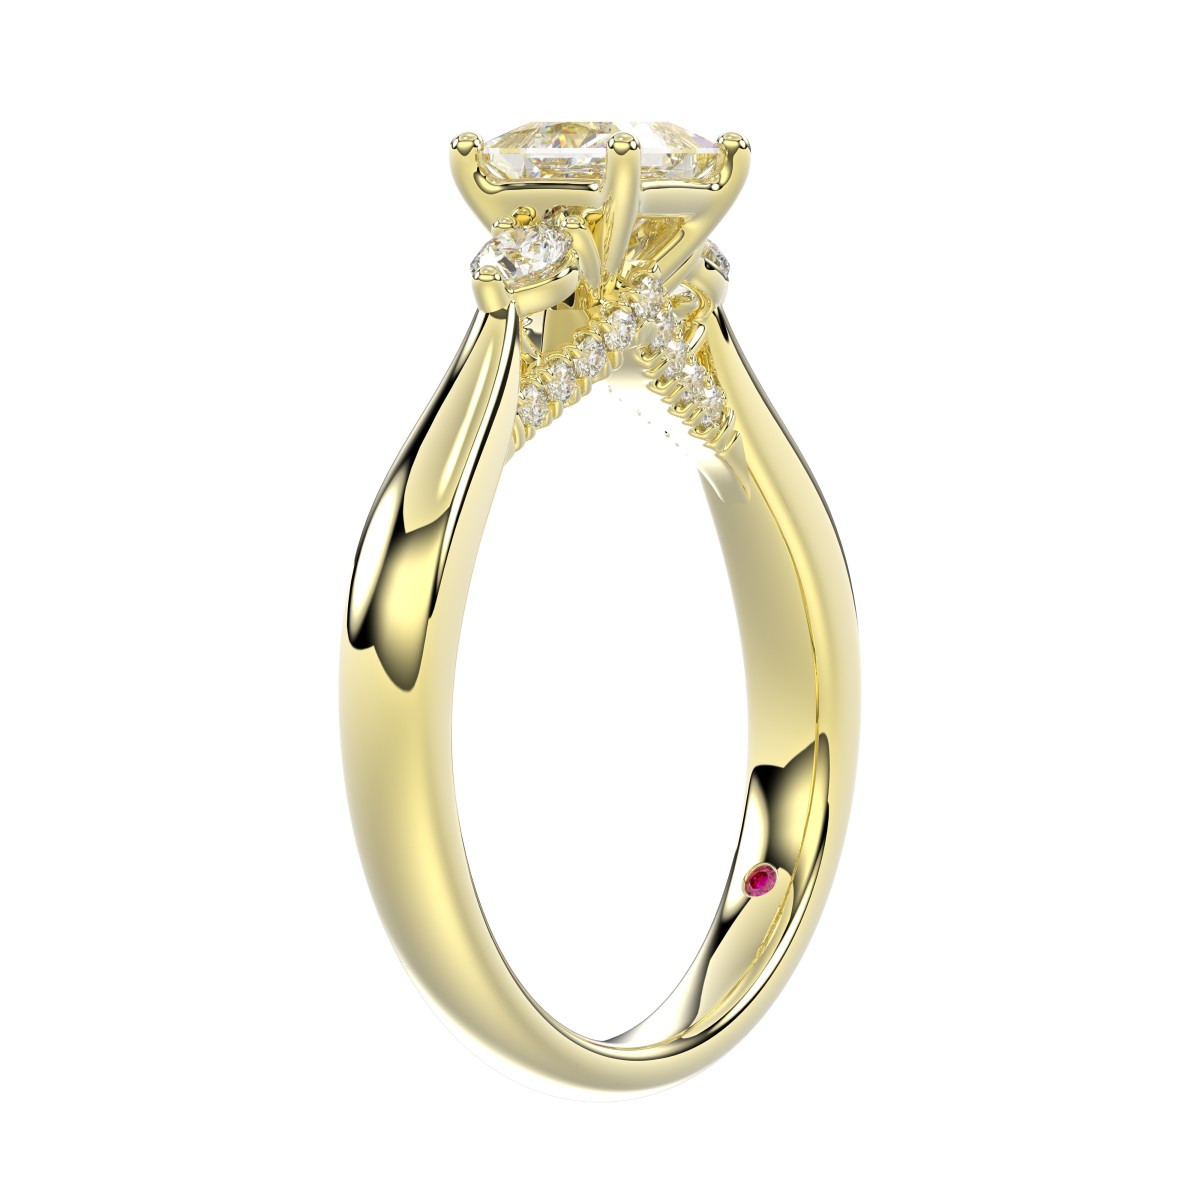 18K YELLOW GOLD 1CT ROUND/PRINCESS DIAMOND LADIES RING ( CENTER STONE 3/4 CT PRINCESS DIAMOND )